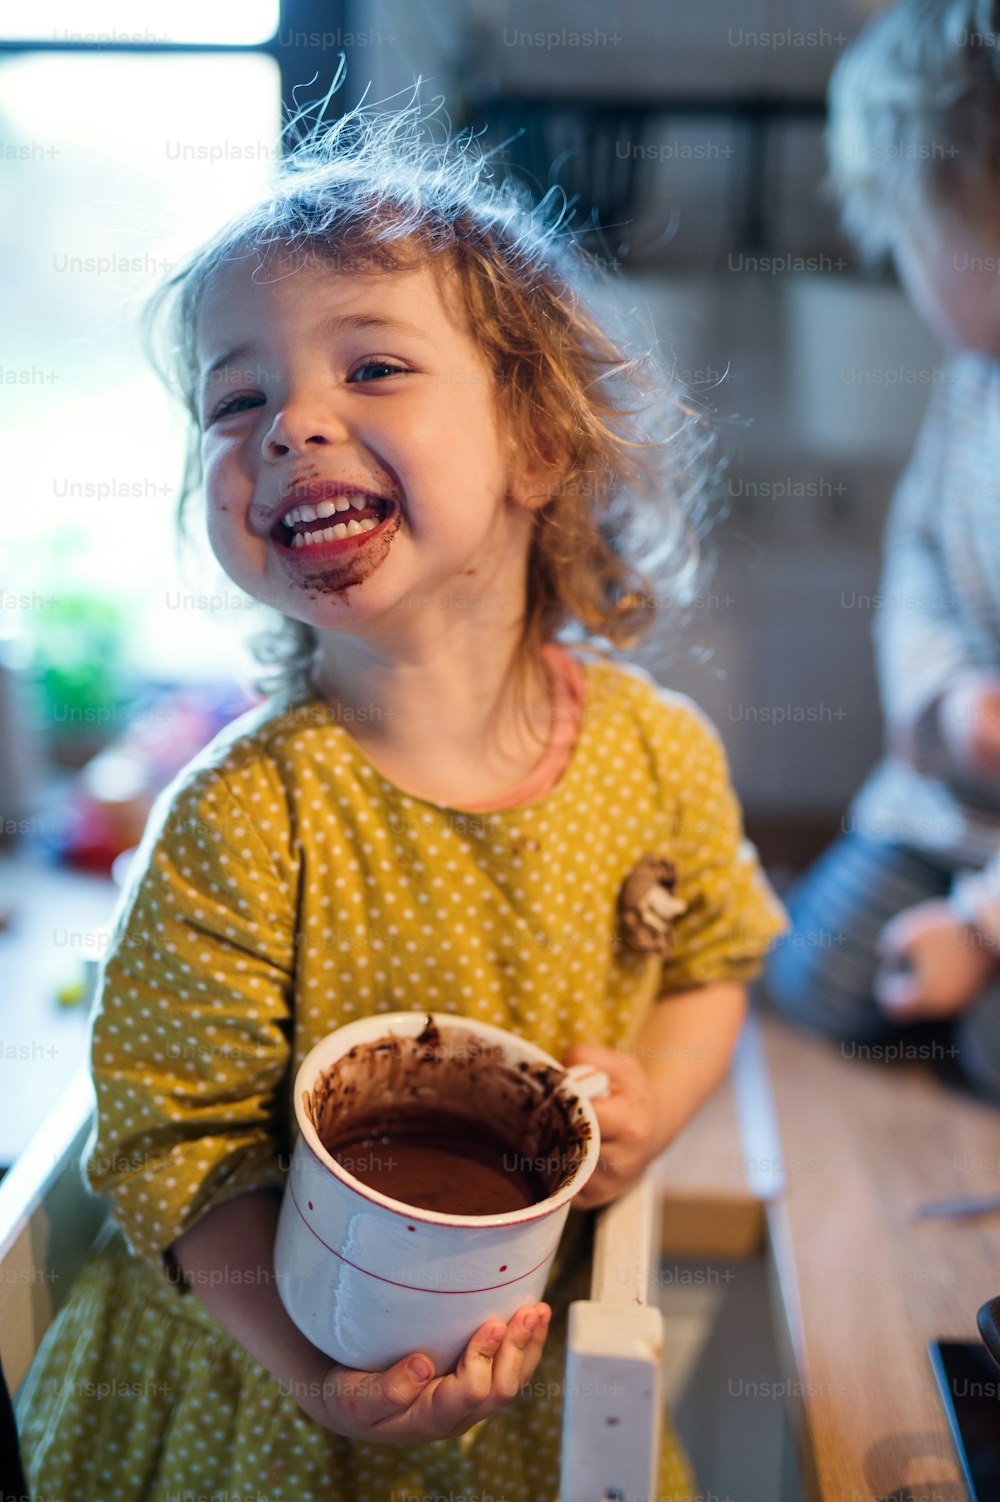 Glückliches kleines Mädchen mit schmutzigem Mund drinnen in der Küche zu Hause, Pudding essend.